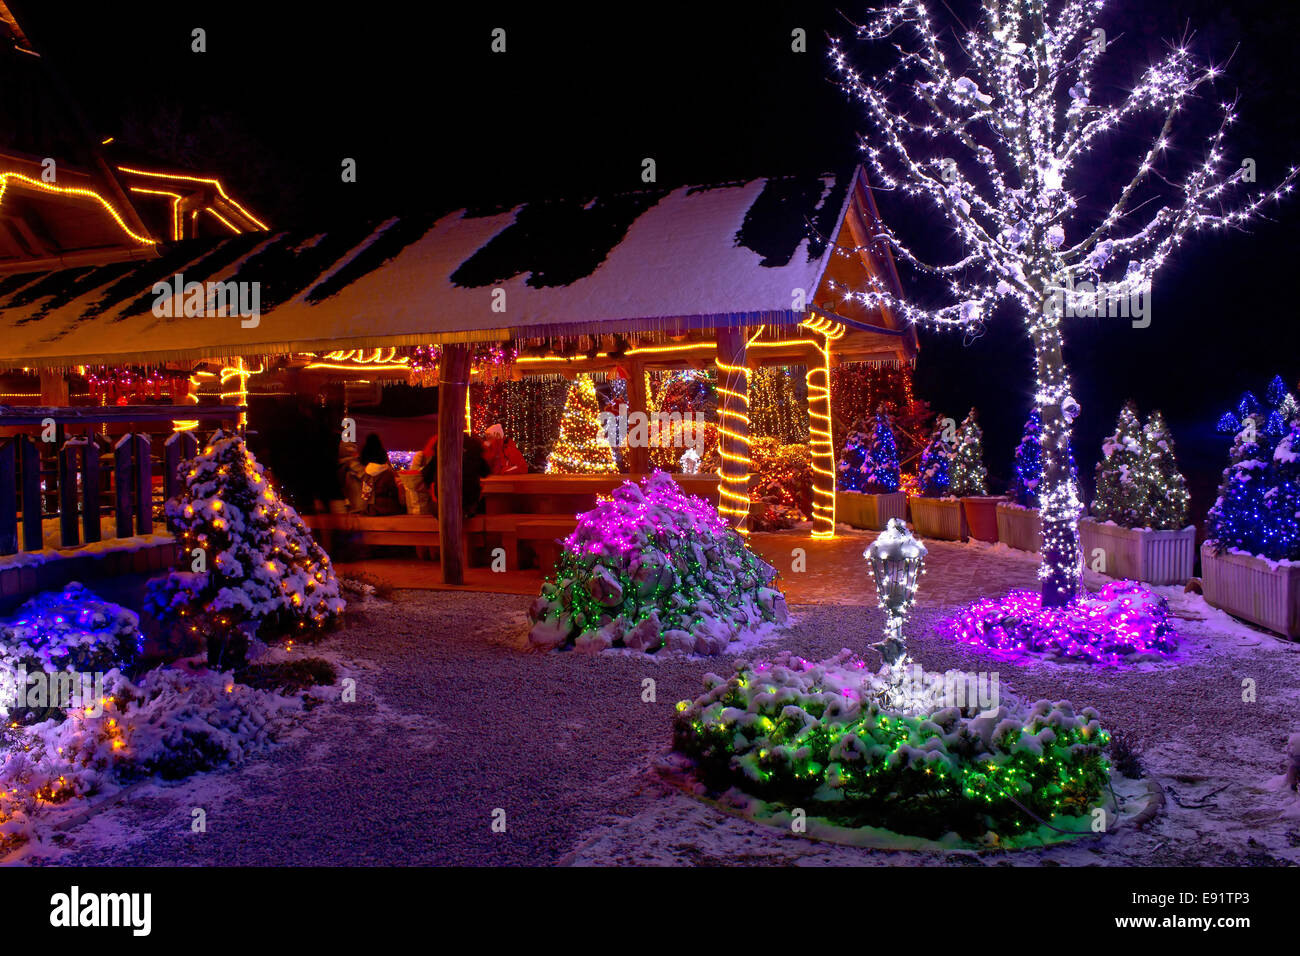 Fantaisie de Noël - lumières d'arbre et lodge Banque D'Images